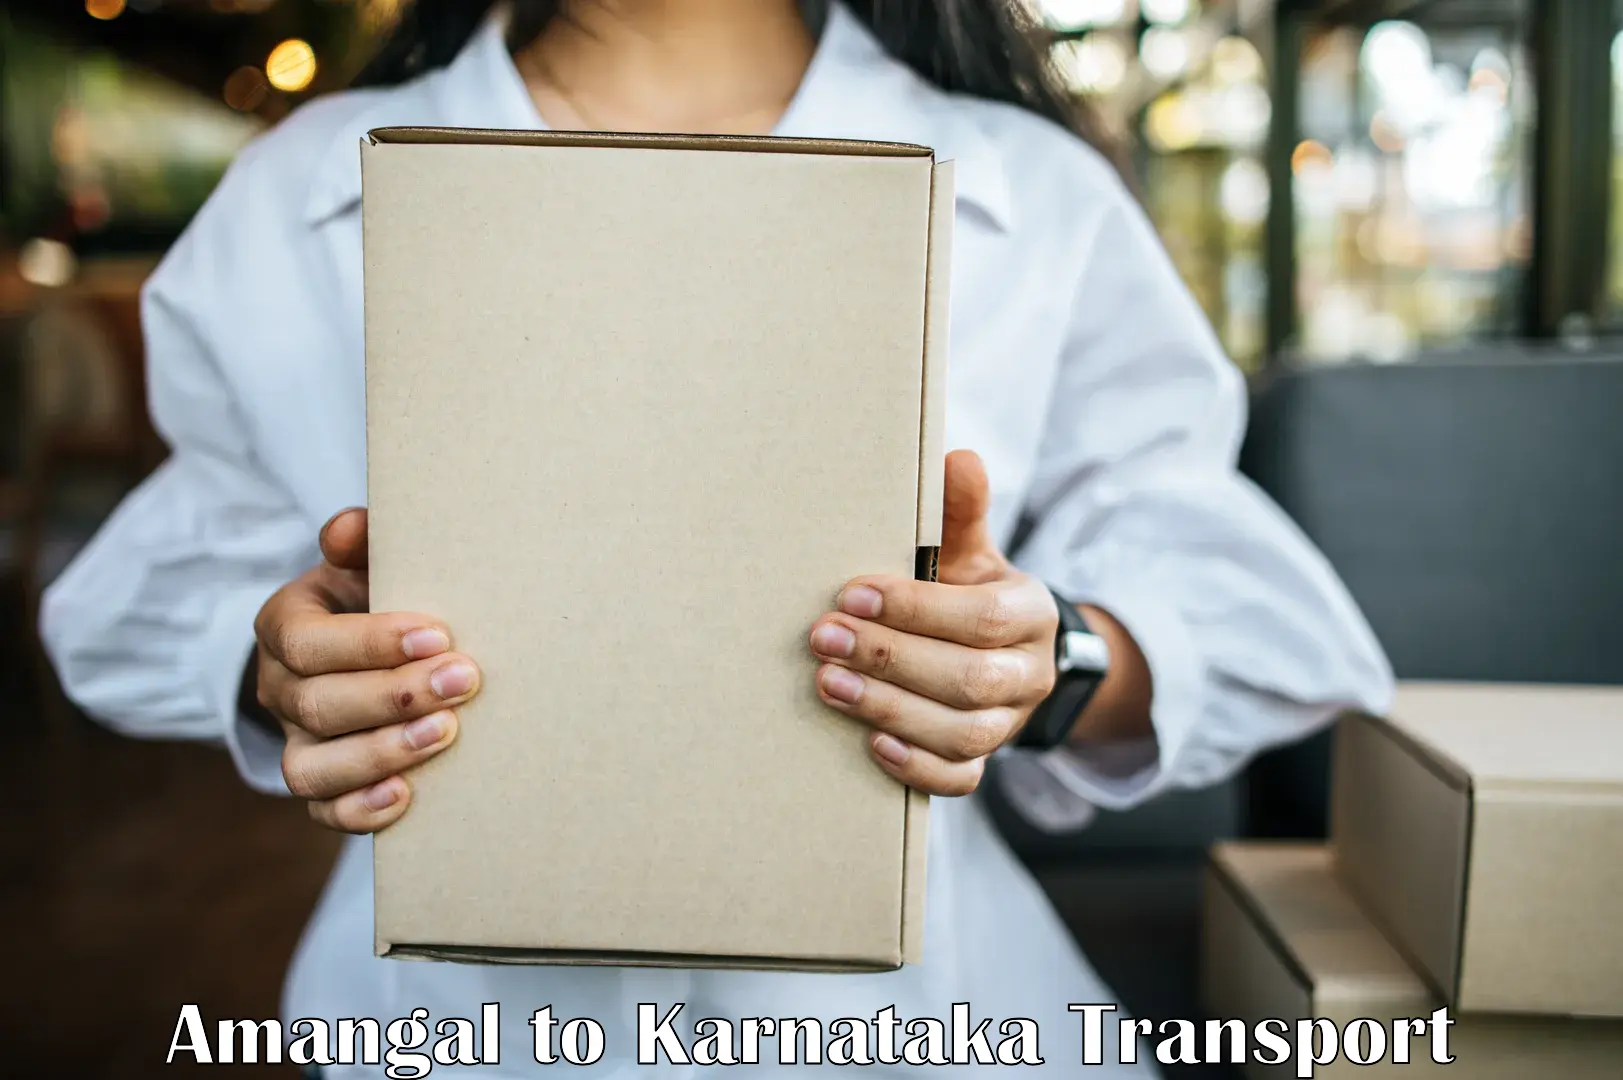 Furniture transport service Amangal to Karnataka